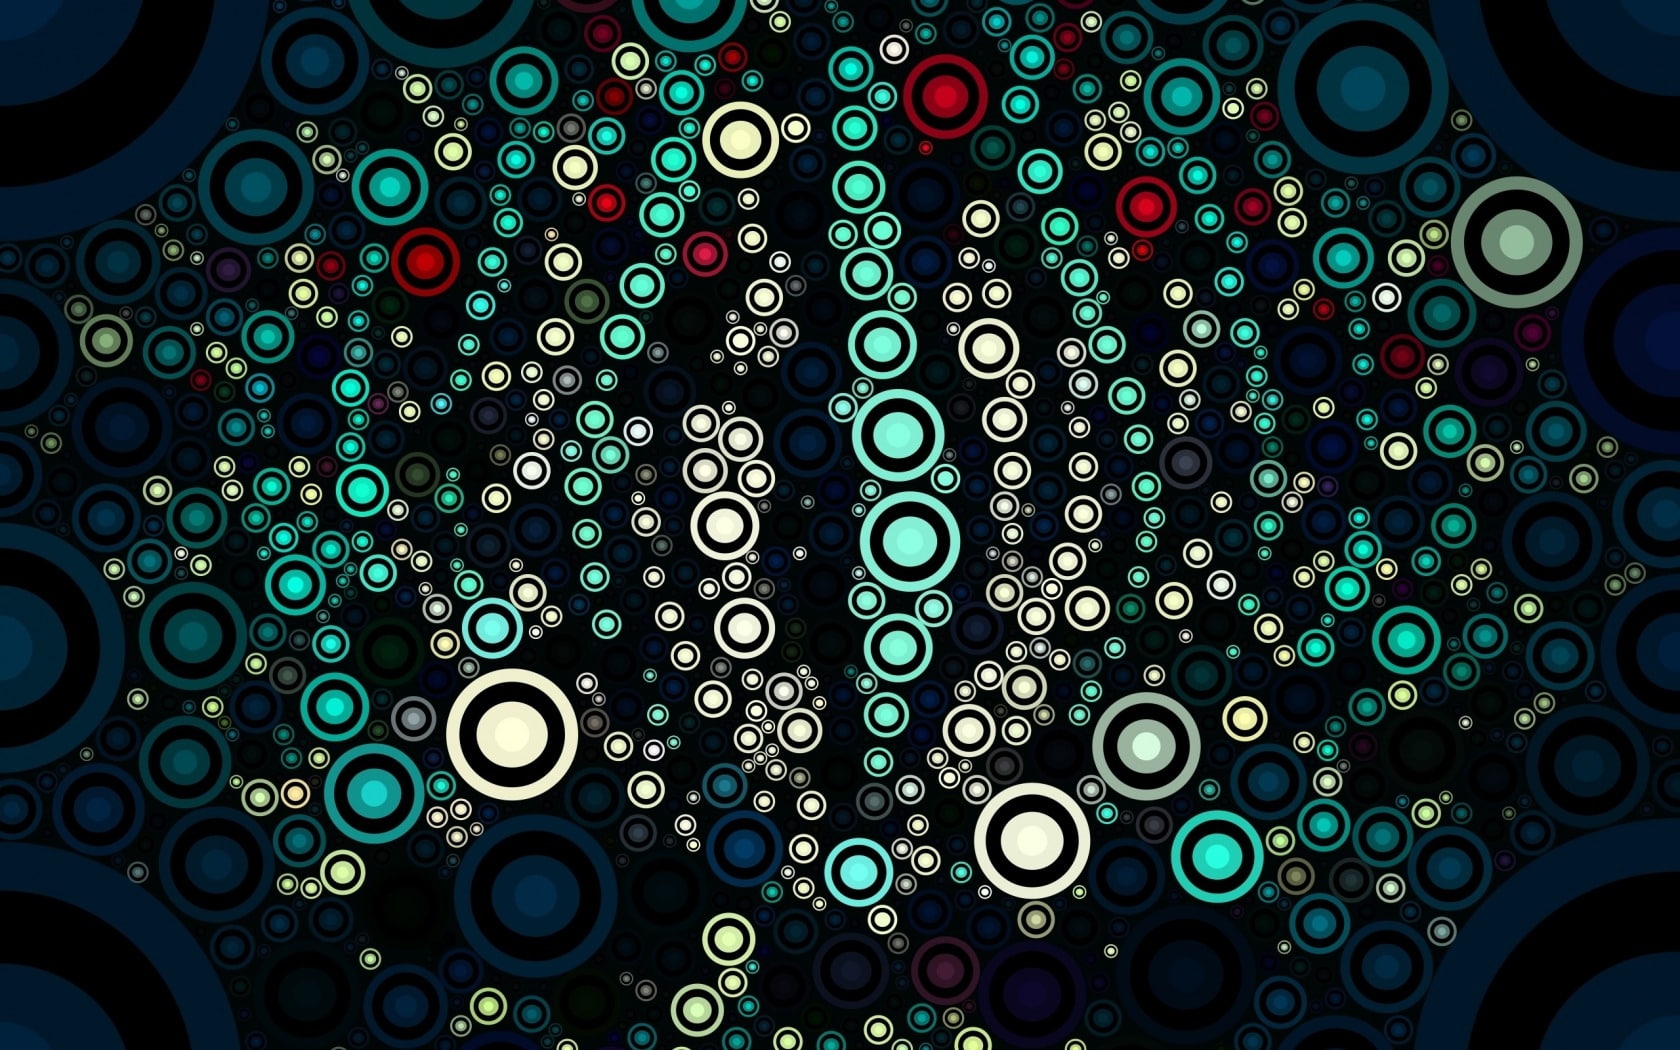 Abstrac, water, vara, dot, bstract, texture, summer, bubbles